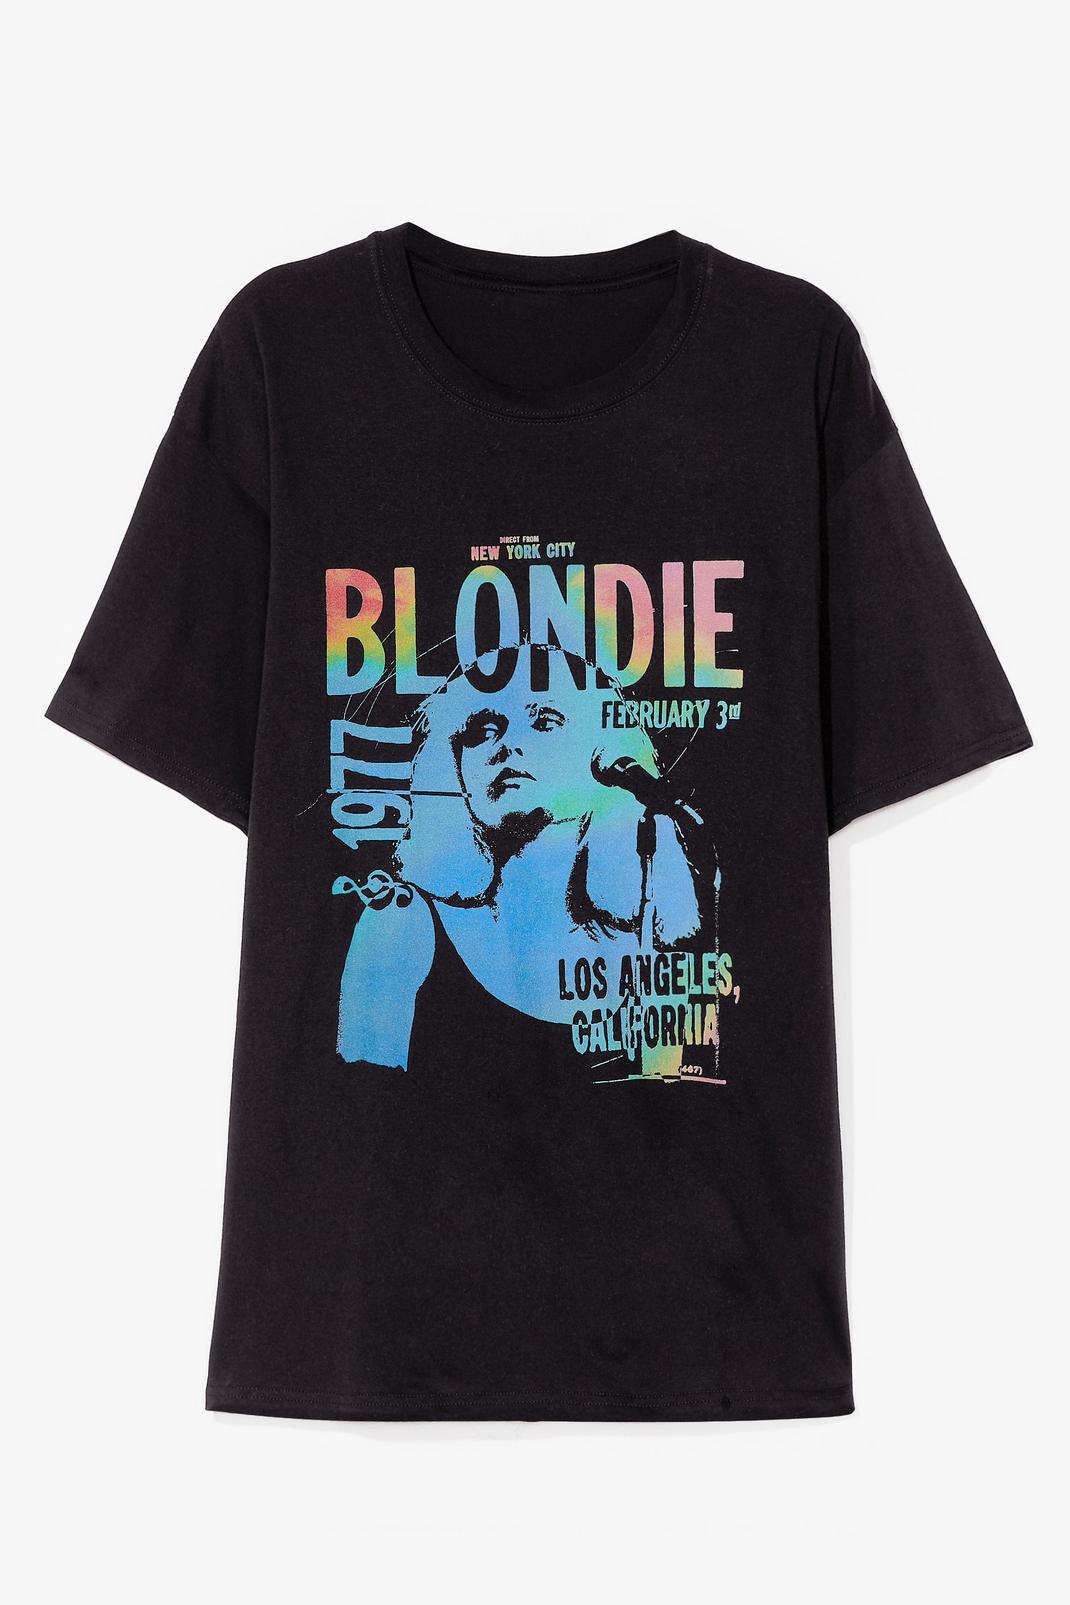 Black Blondie 1977 Graphic Band Tee image number 1